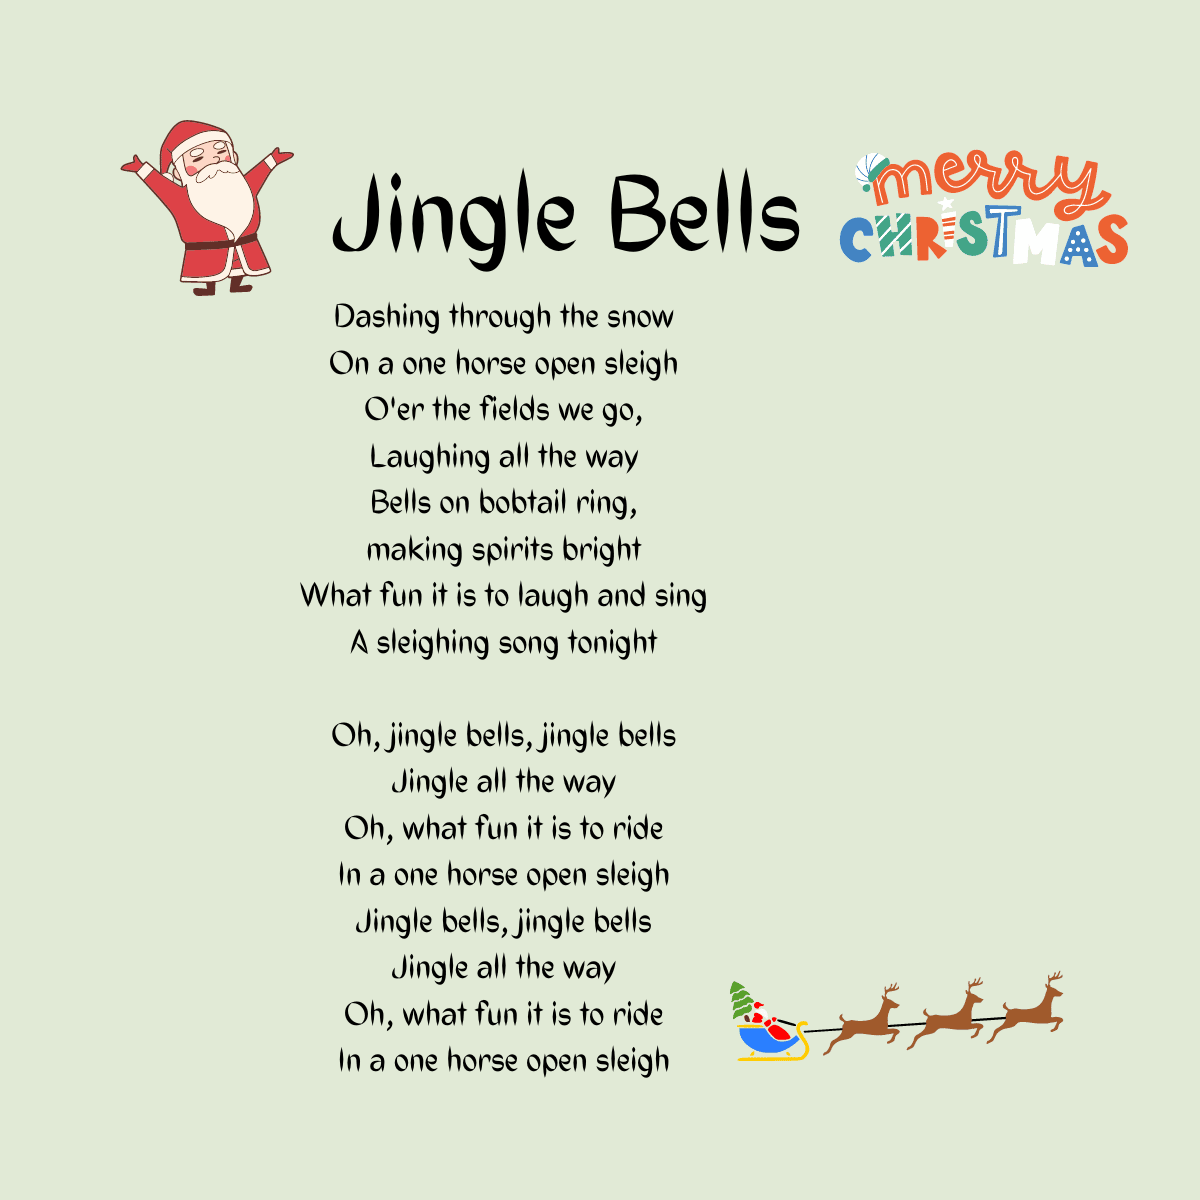 Lyrics To Jingle Bells Printable